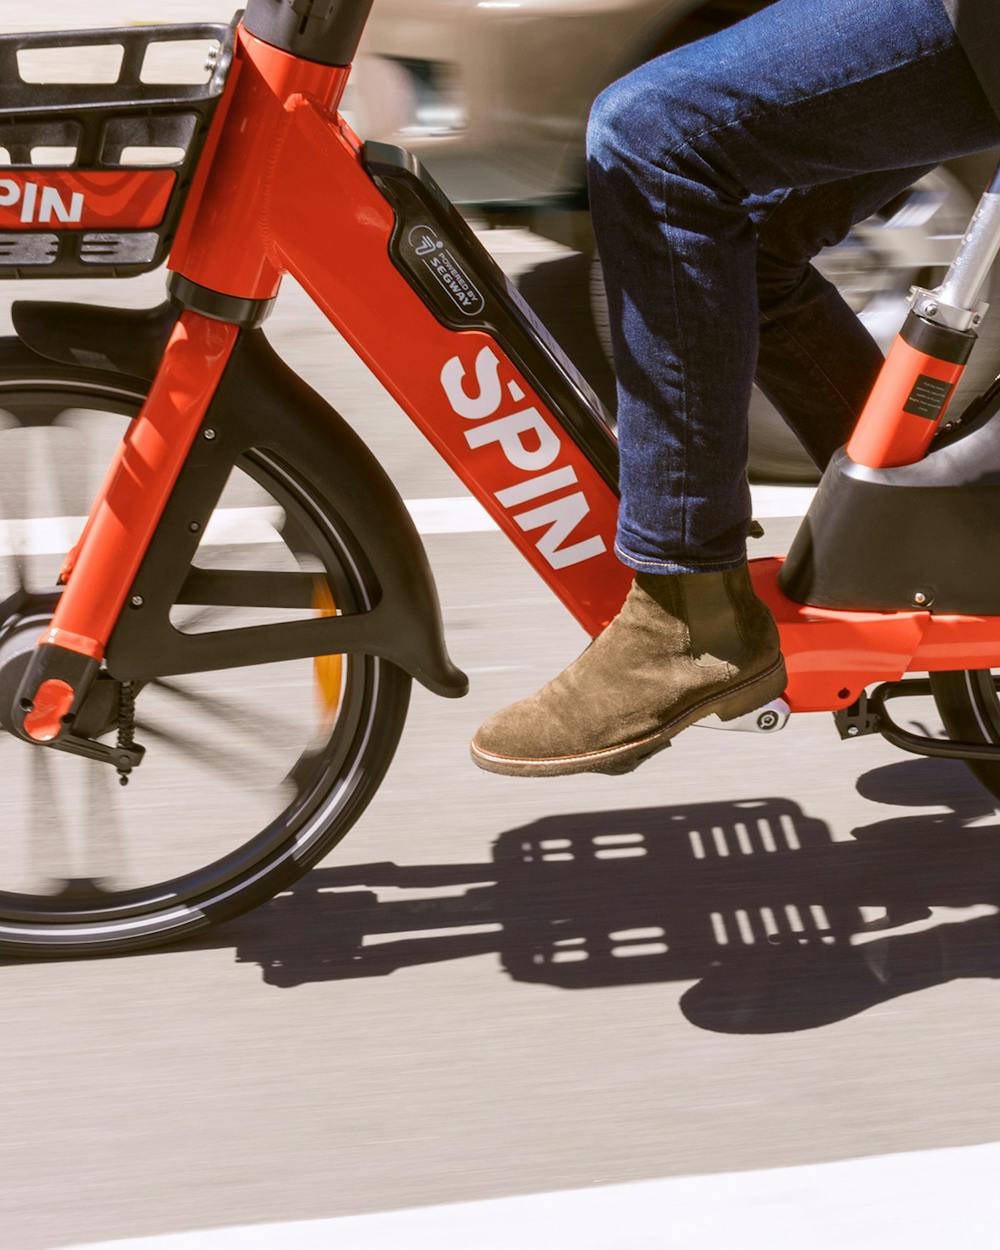 A person rides a spin e-bike. Photo via Flickr.